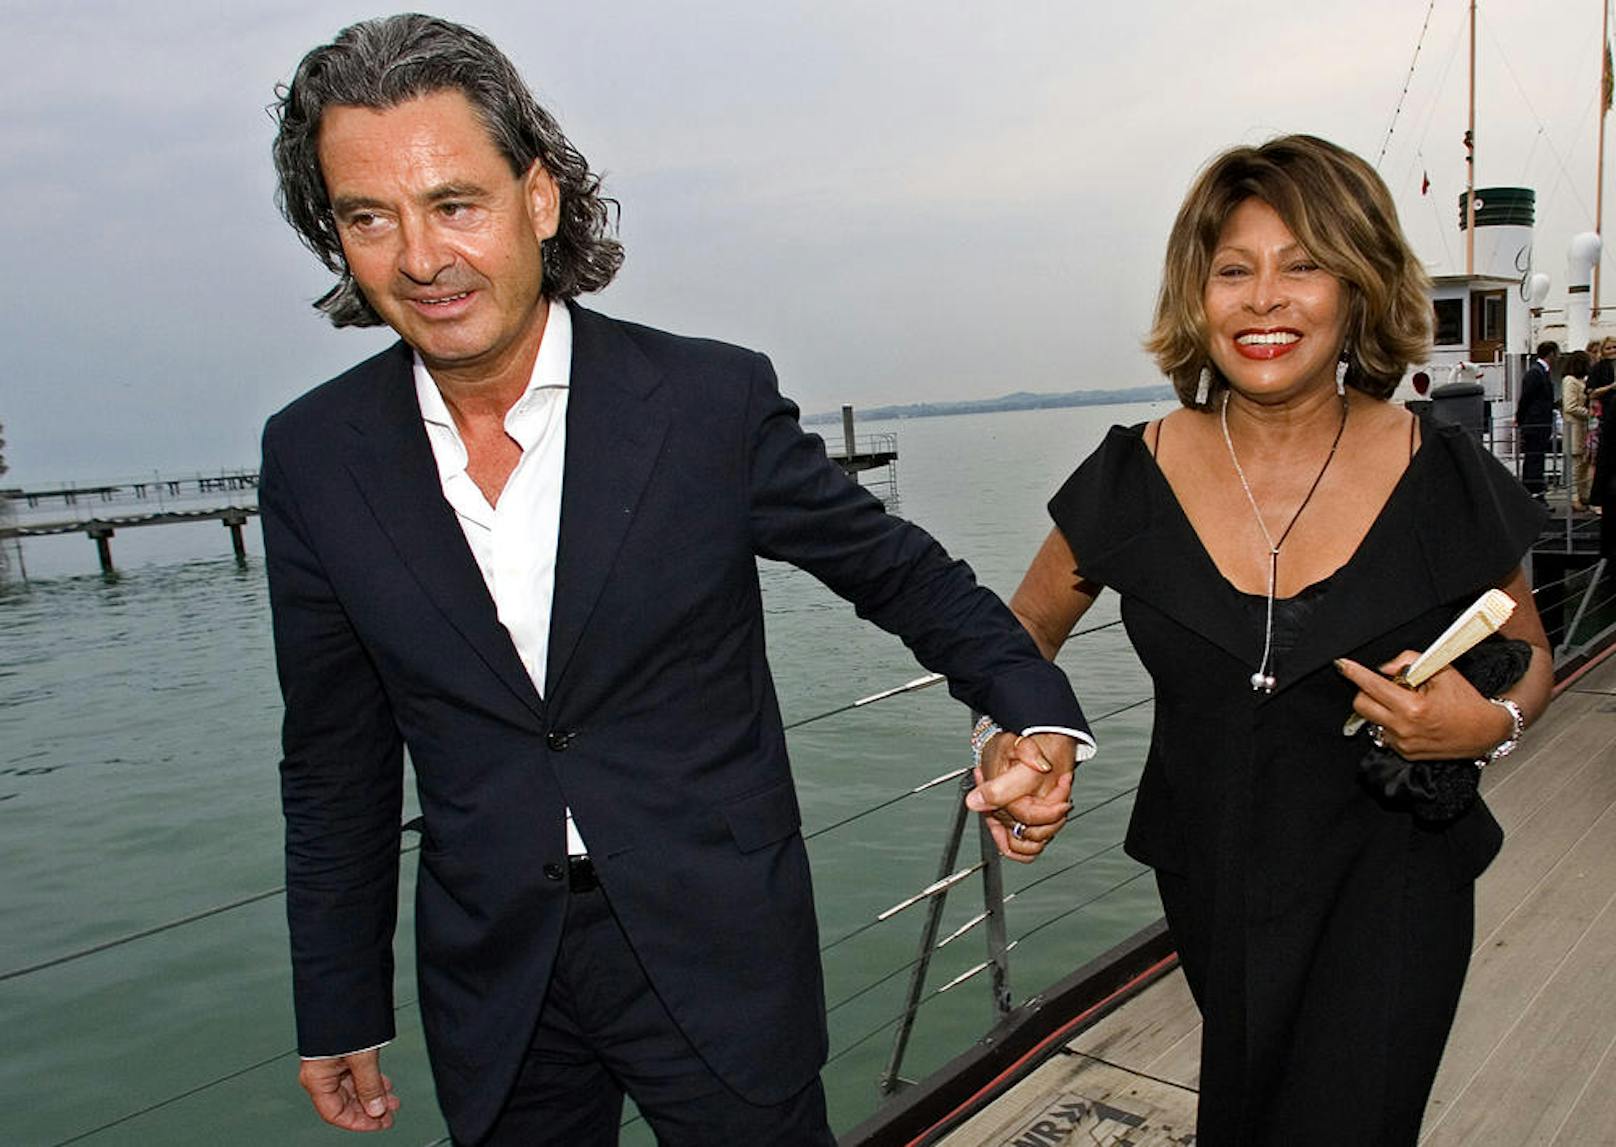 Seit 1986 liebte Tina den ehemaligen Musikmanager Erwin Bach. Erst 2013 hatte das Paar geheiratet.